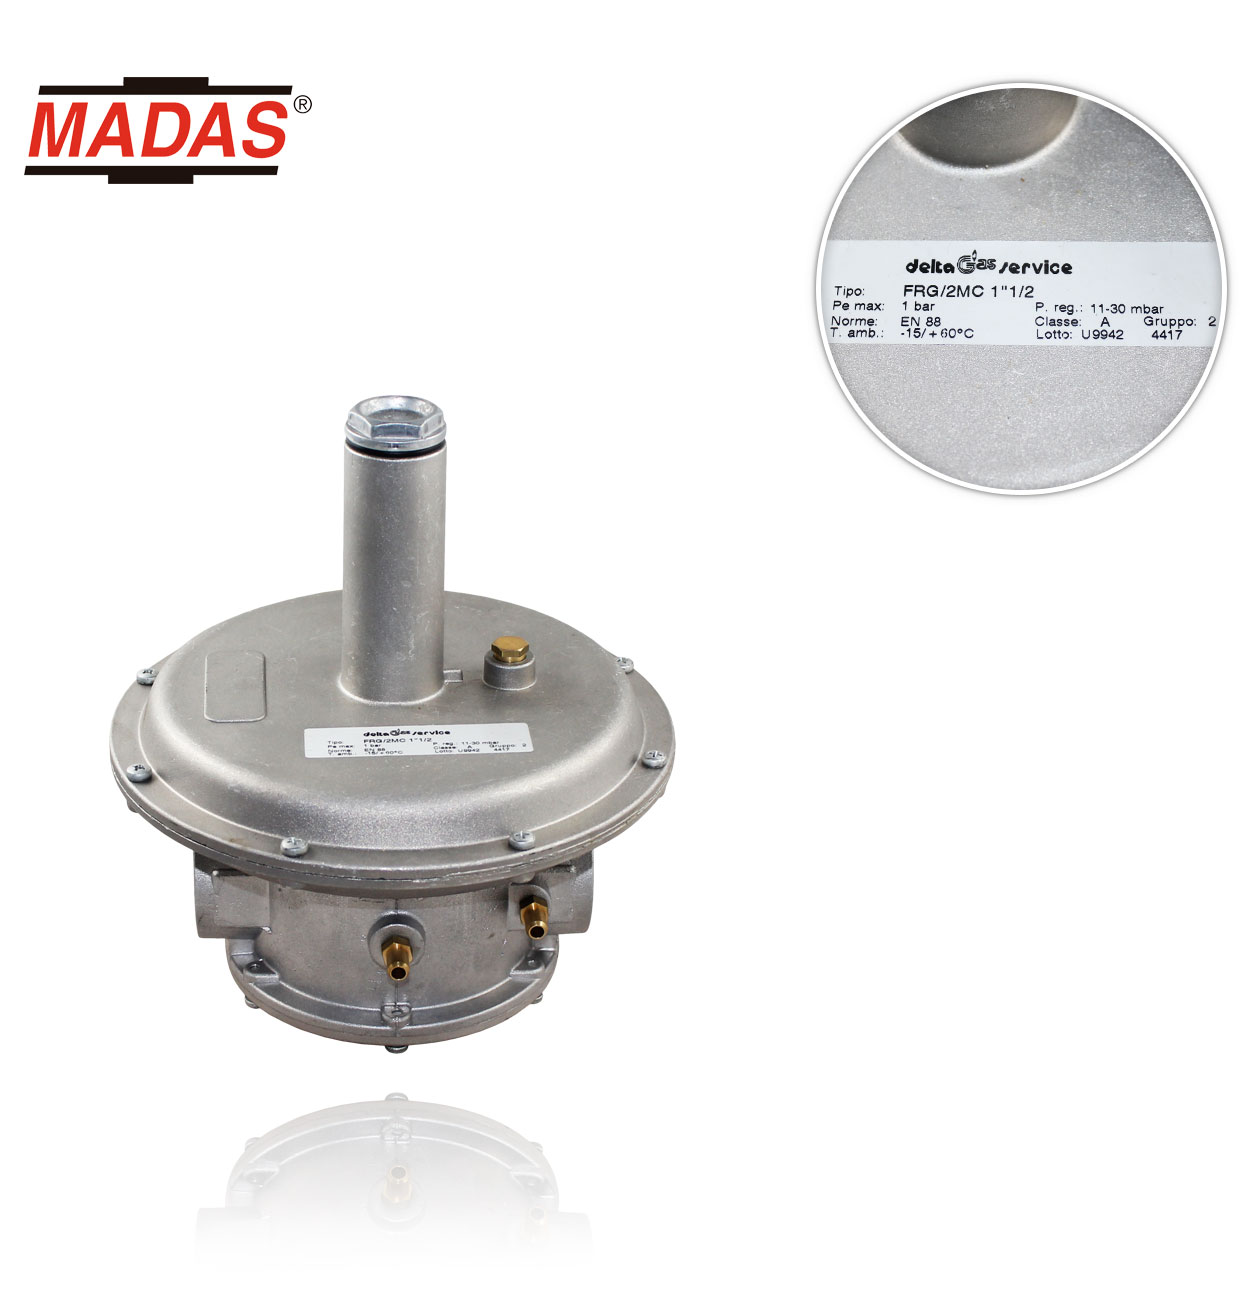 FRG/2MC.40 1"1/2 1bar 13-23mbar with Madas gas regulator with filter